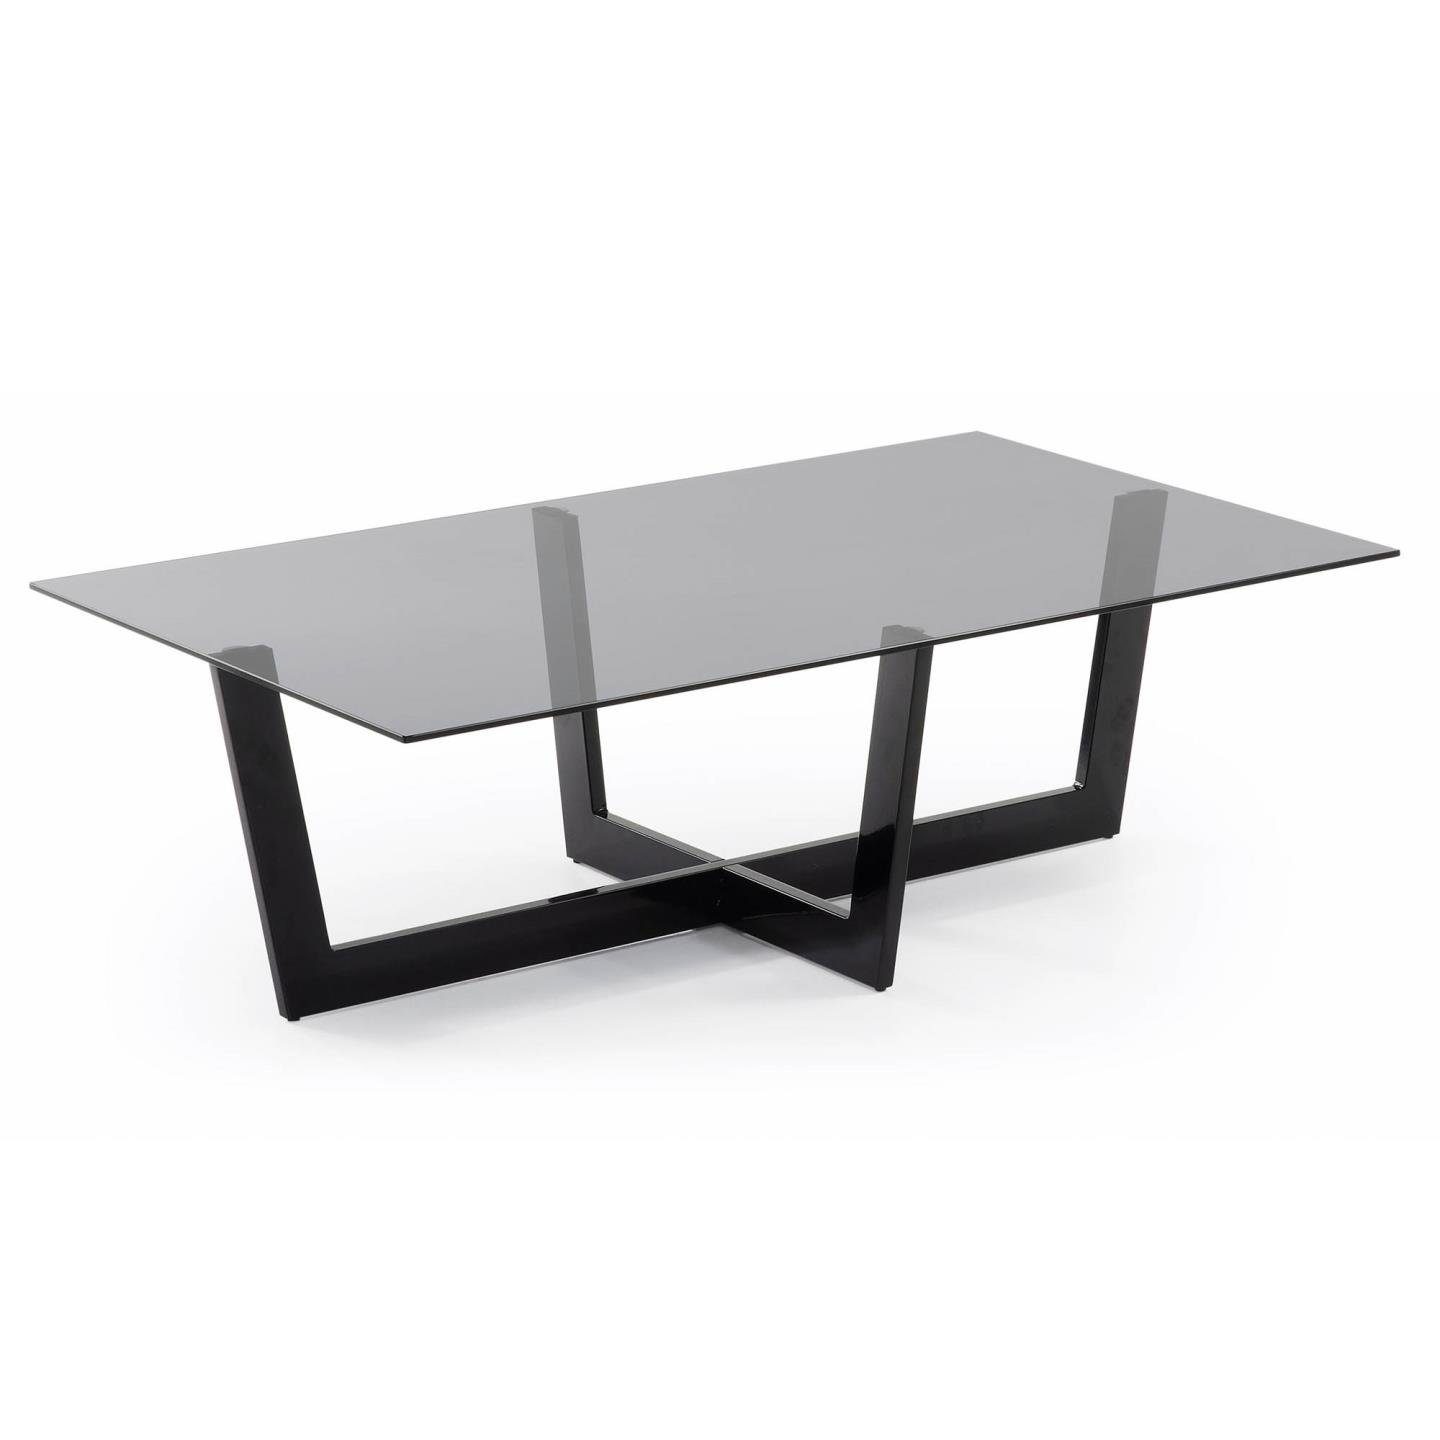 Natur24 Beistelltisch Stahlstruktur schwarz Glas Tisch Couchtisch Plam 120x70cm